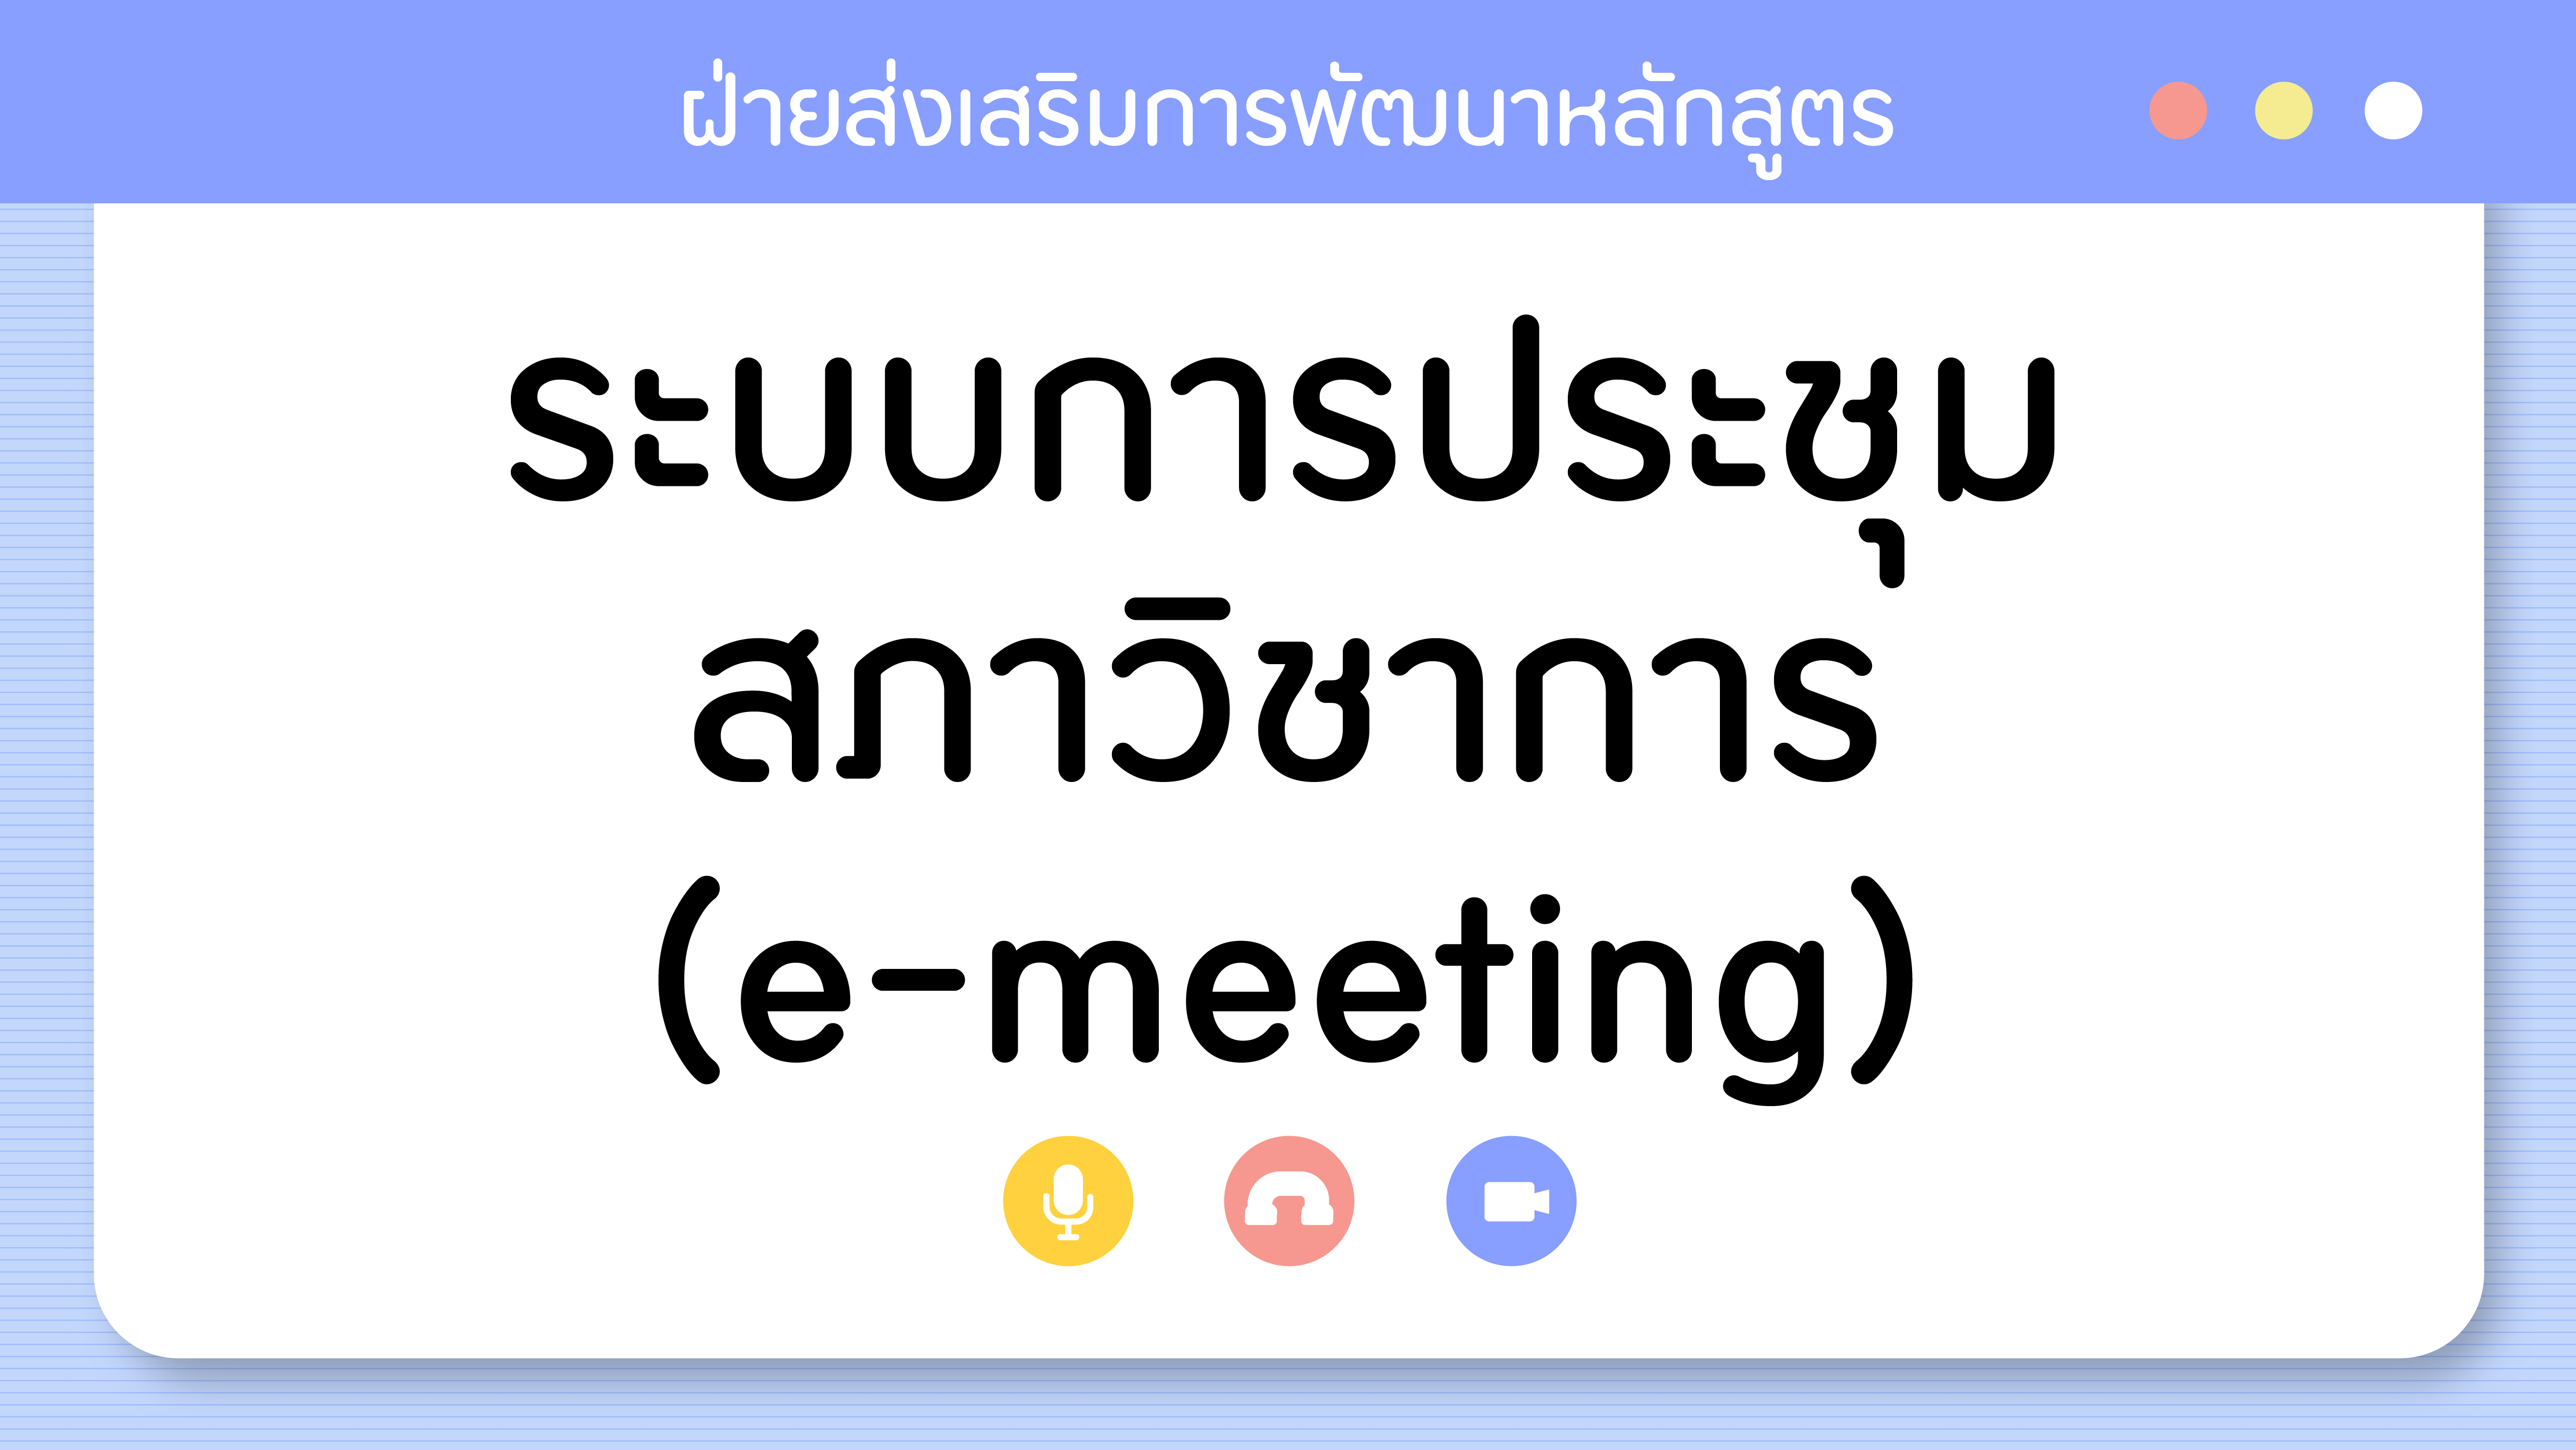 e-meeting